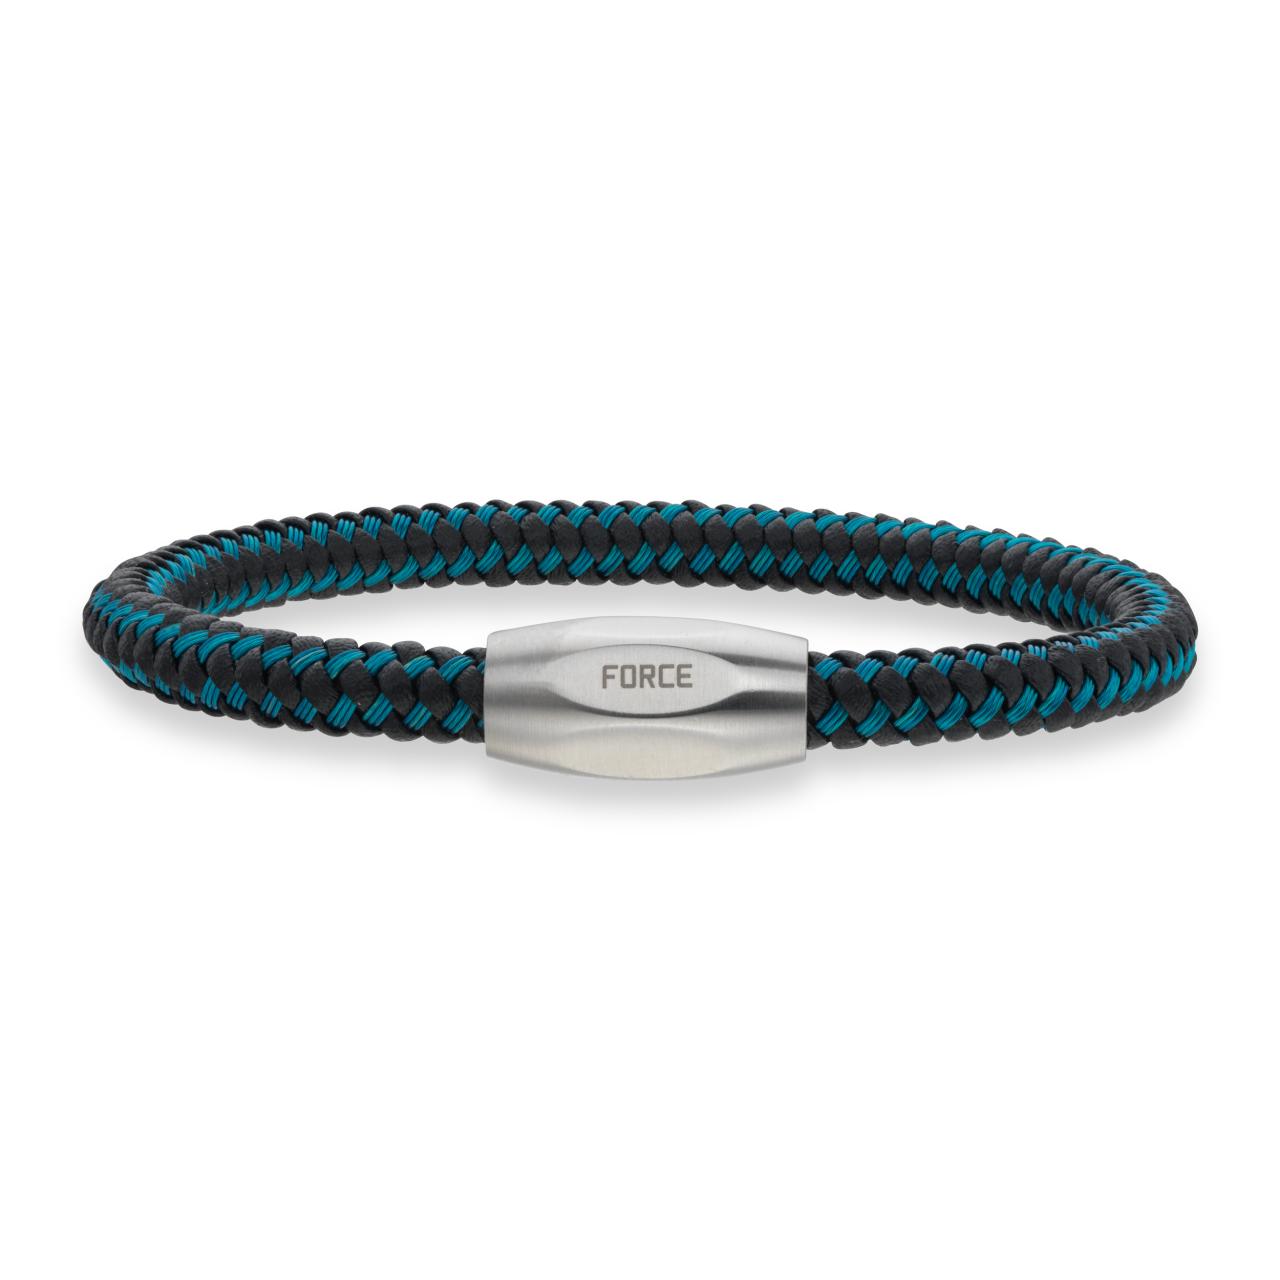 Force armbånd blå kabel/sort læder stål lås 19cm